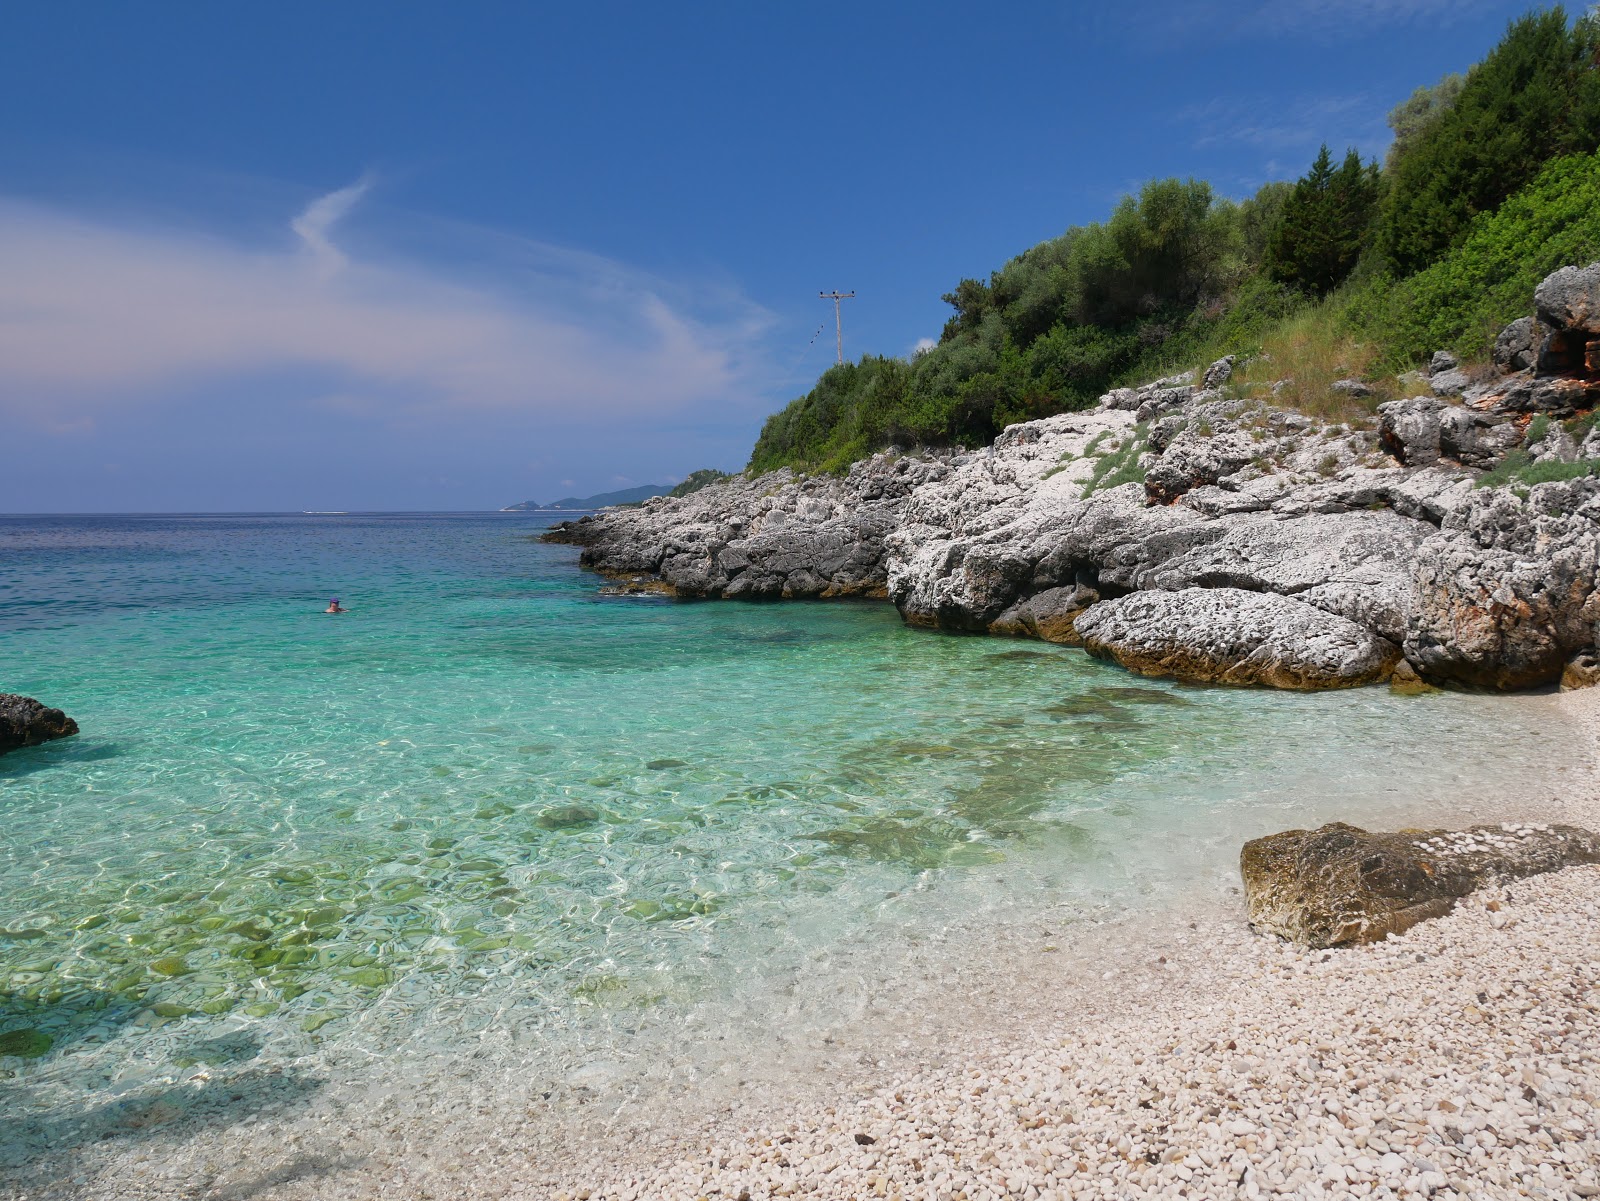 Valokuva Spiaggiaista. pinnalla turkoosi puhdas vesi:n kanssa